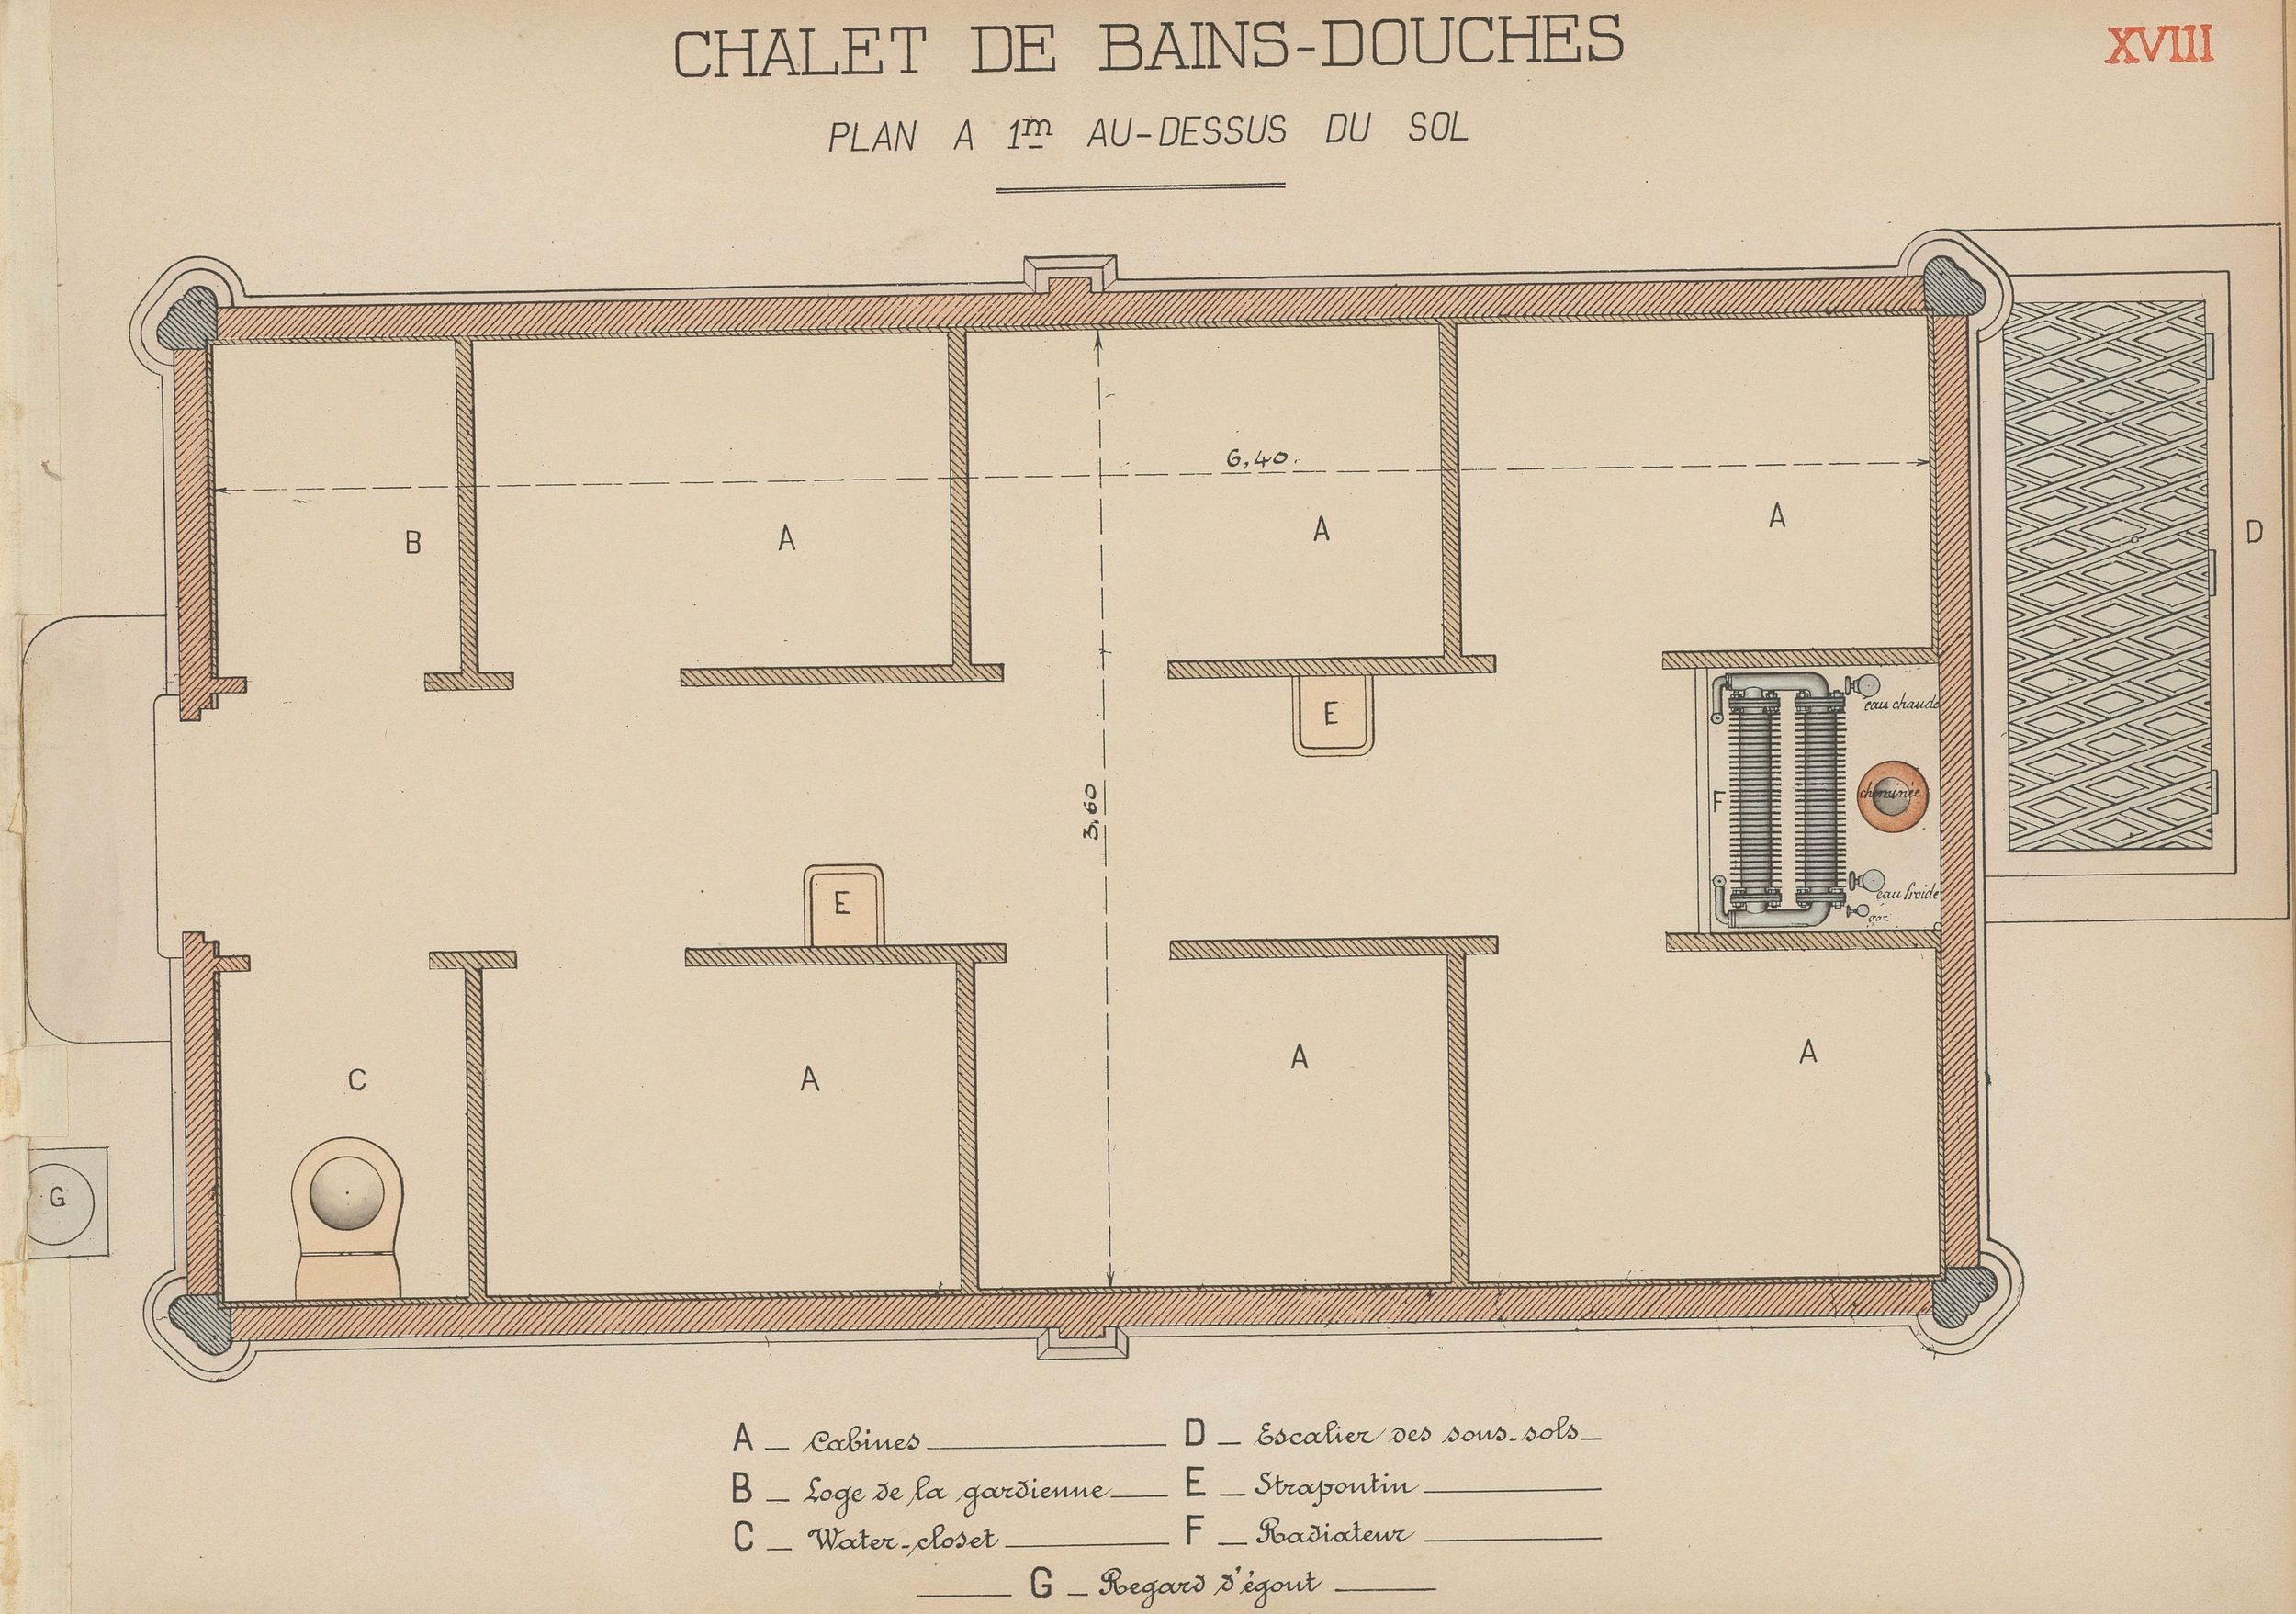 Chalet de bains-douches, plan à 1m au-dessus du sol (plan) : dessin manuscrit couleur sur papier cartonné par le Service municipal de la voirie (1914-1915, 3SAT/24/21)